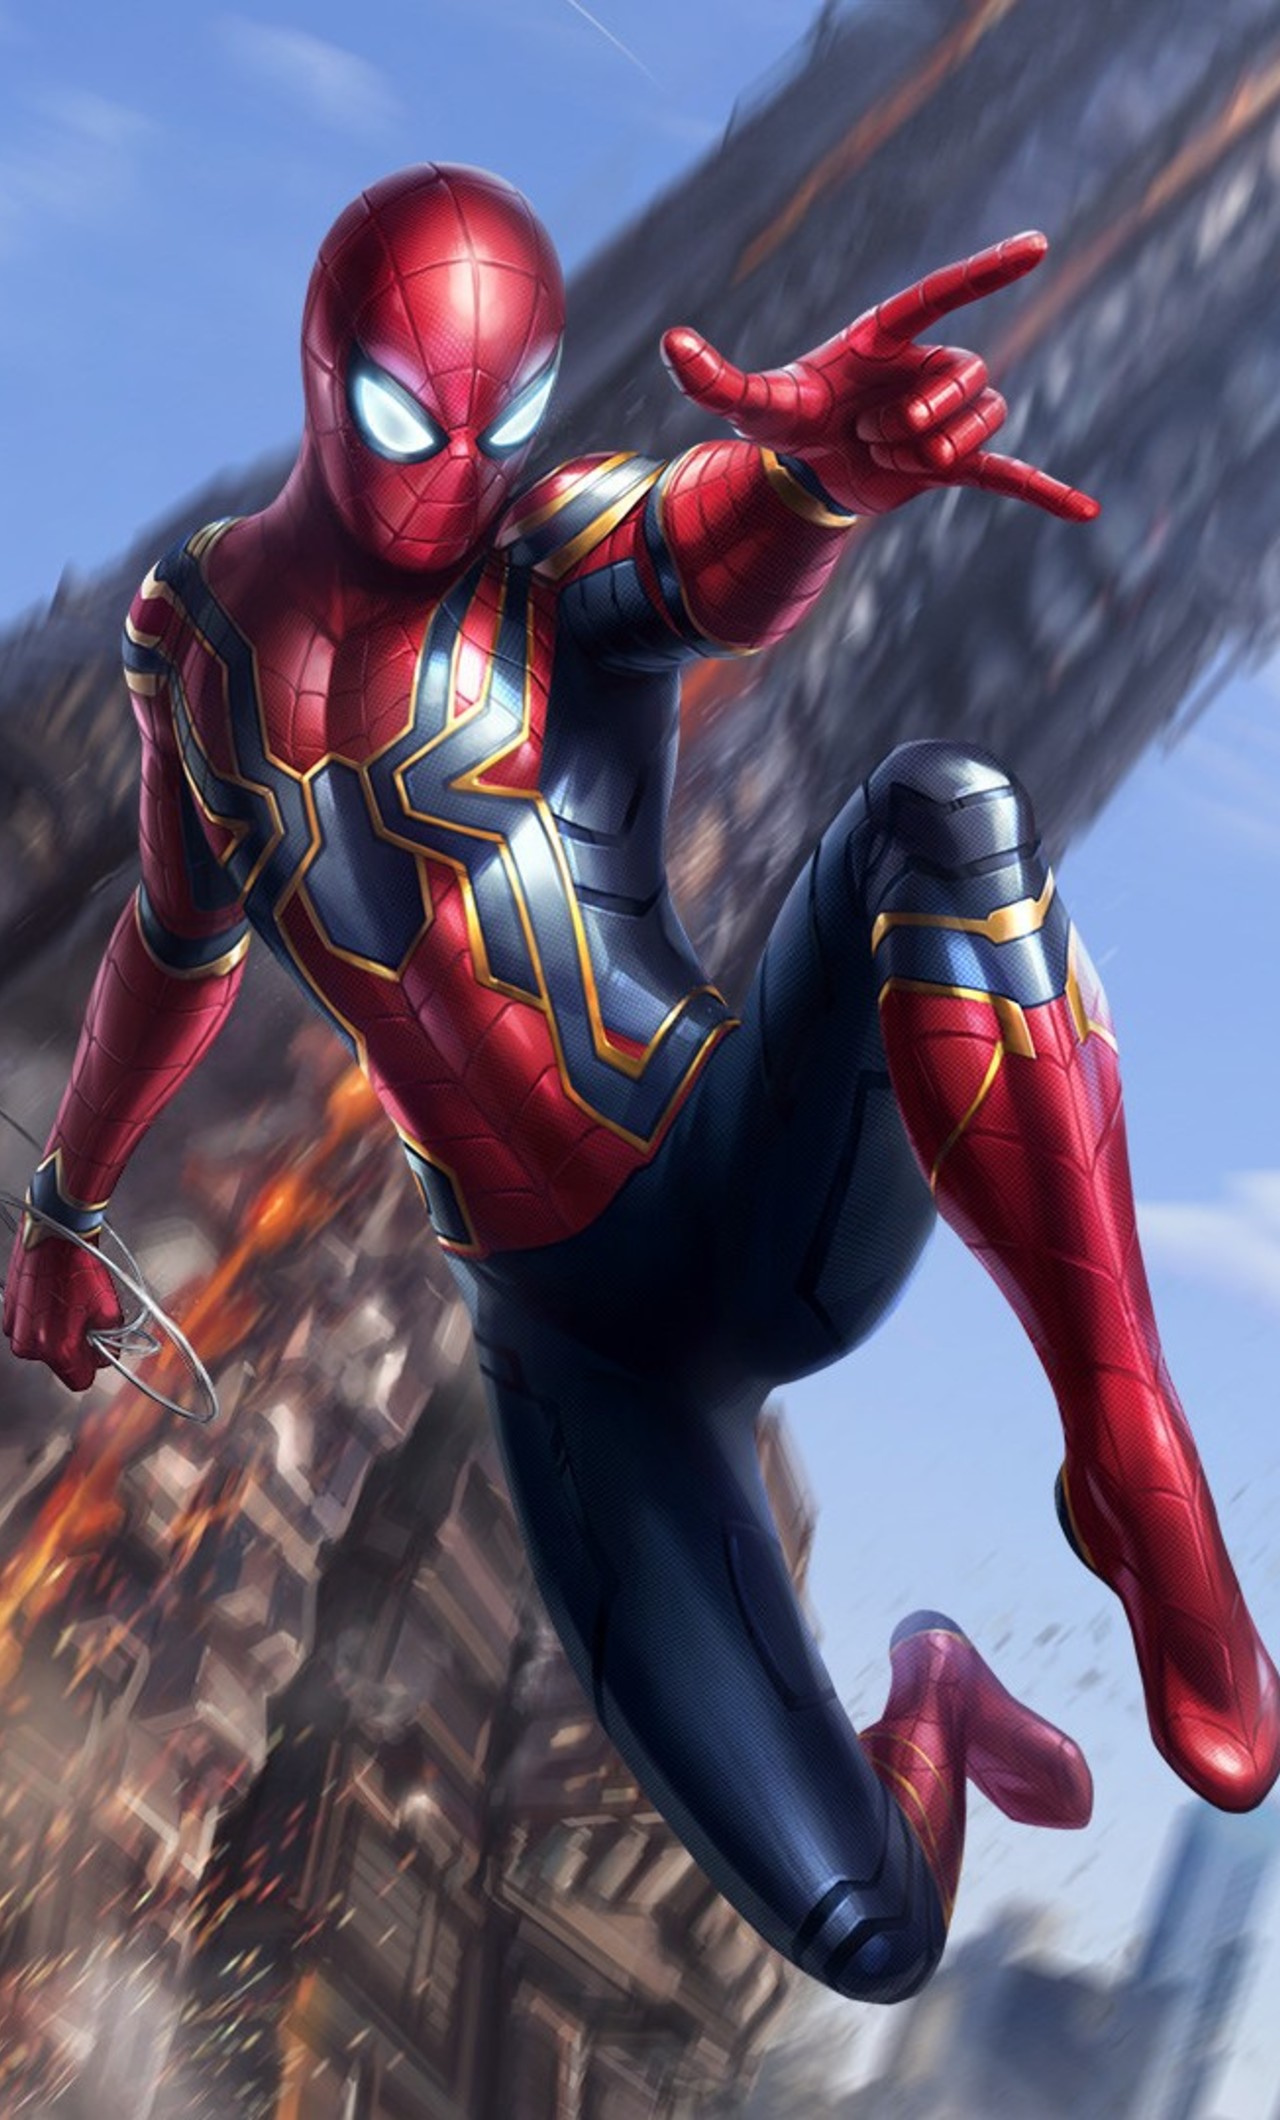 fond d'écran spiderman,super héros,personnage fictif,homme araignée,héros,oeuvre de cg